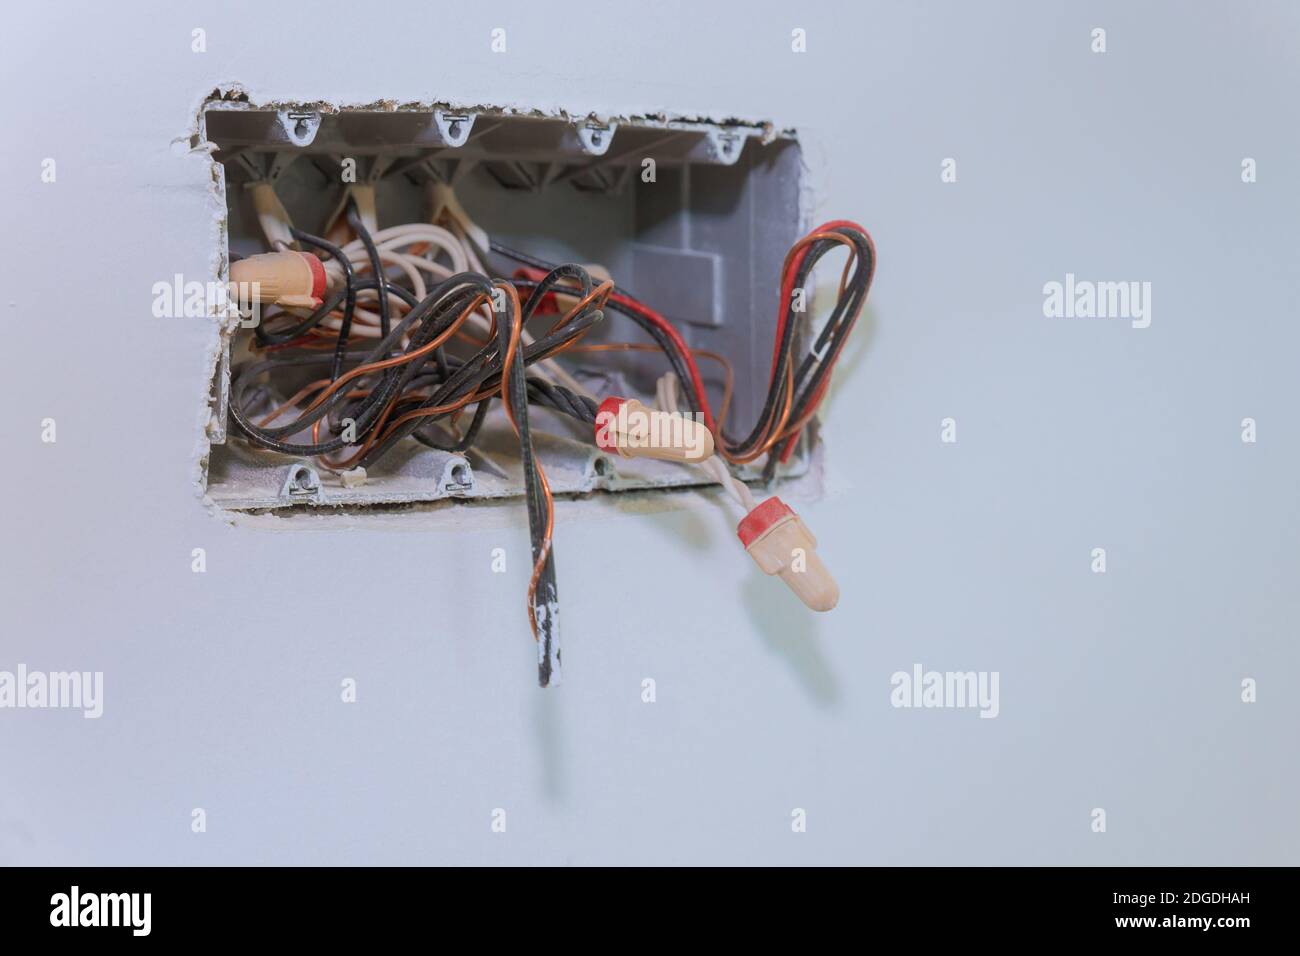 Unfertige Steckdose mit elektrischen Drähten und Stecker Installiert in  Gipskarton-Trockenbau für Gipswände Stockfotografie - Alamy